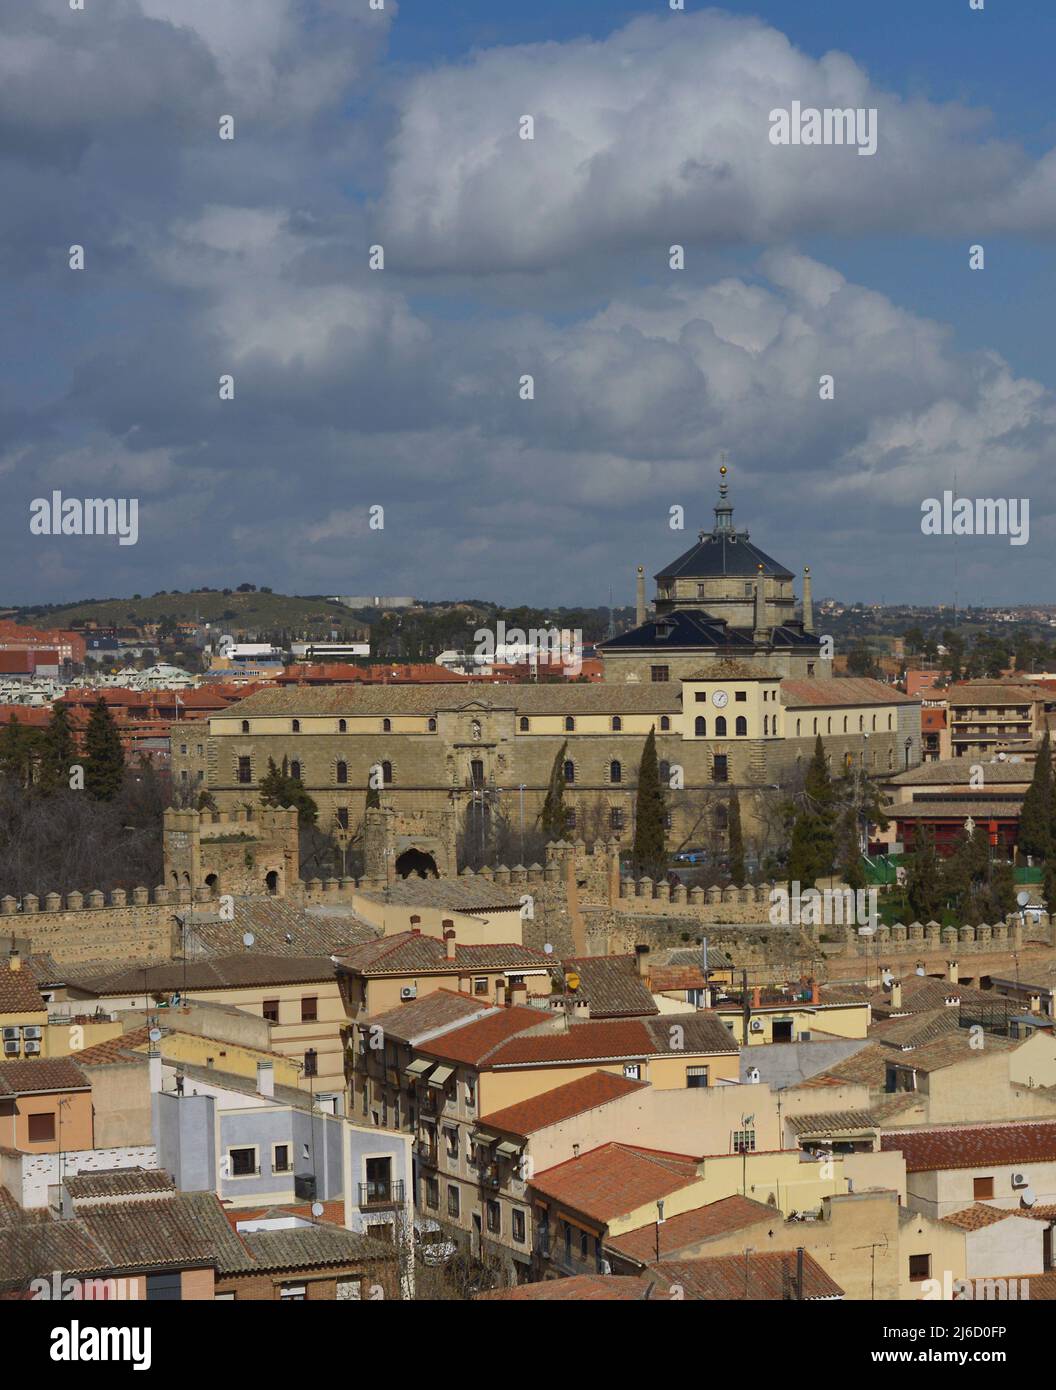 Toledo, Spagna. Vista panoramica in cui spicca l'Ospedale di Tavera, costruito tra il 1541 e il 1603. Fu iniziata da Alonso de Covarrubias (1488-1570) e completata da Bartolomé Bustamante (1501-1570) in stile rinascimentale. Foto Stock